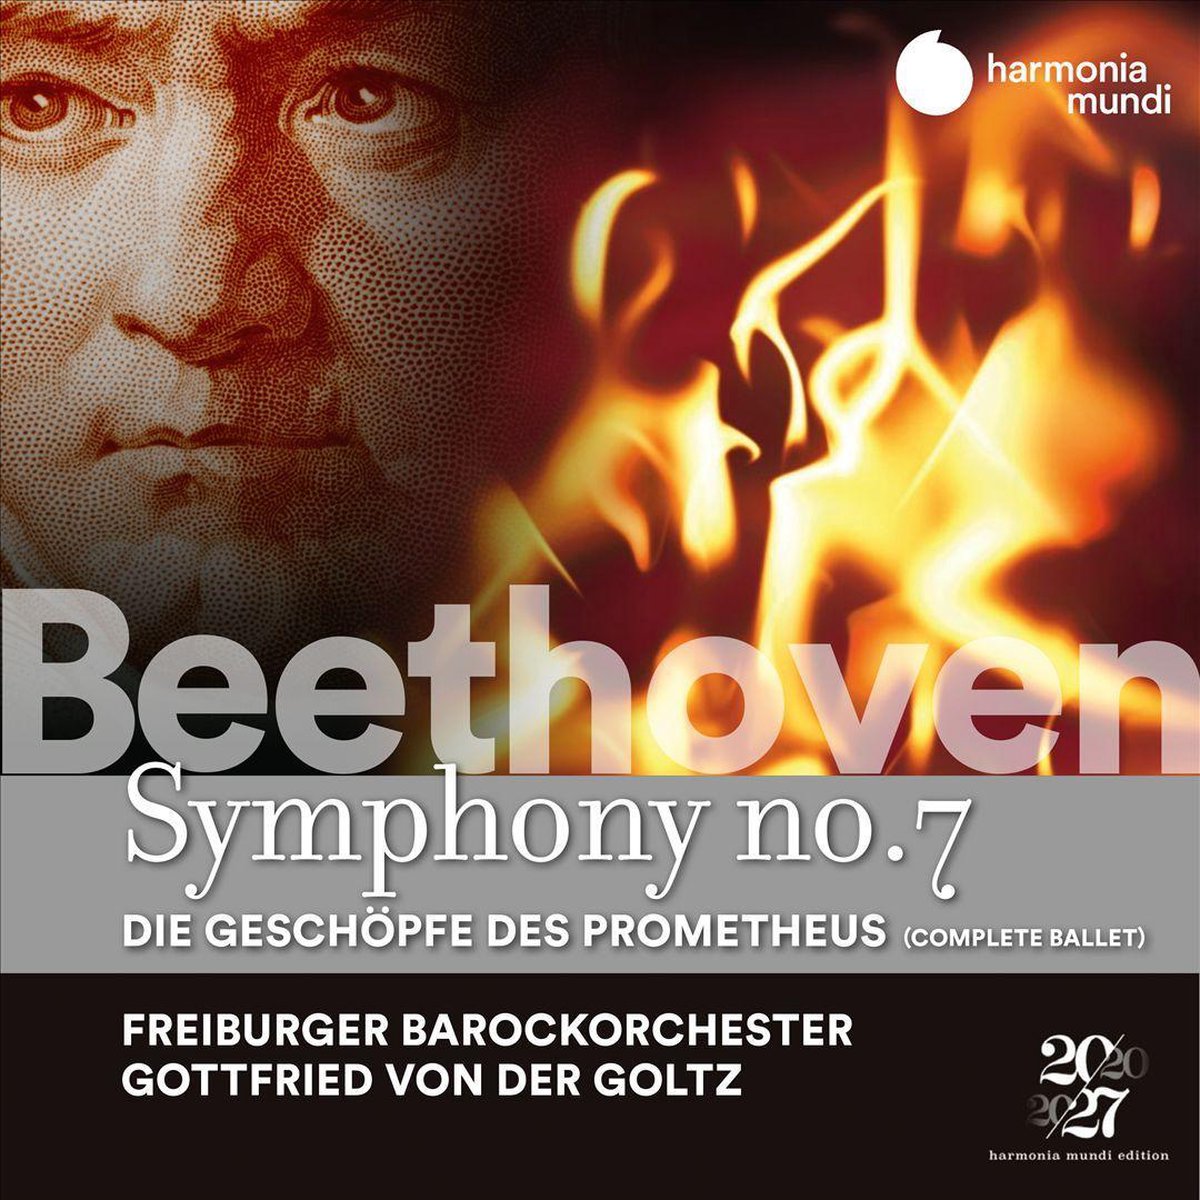 Freiburger Barockorchester / Gottfried von Der Goltz - Beethoven Symphony No. 7